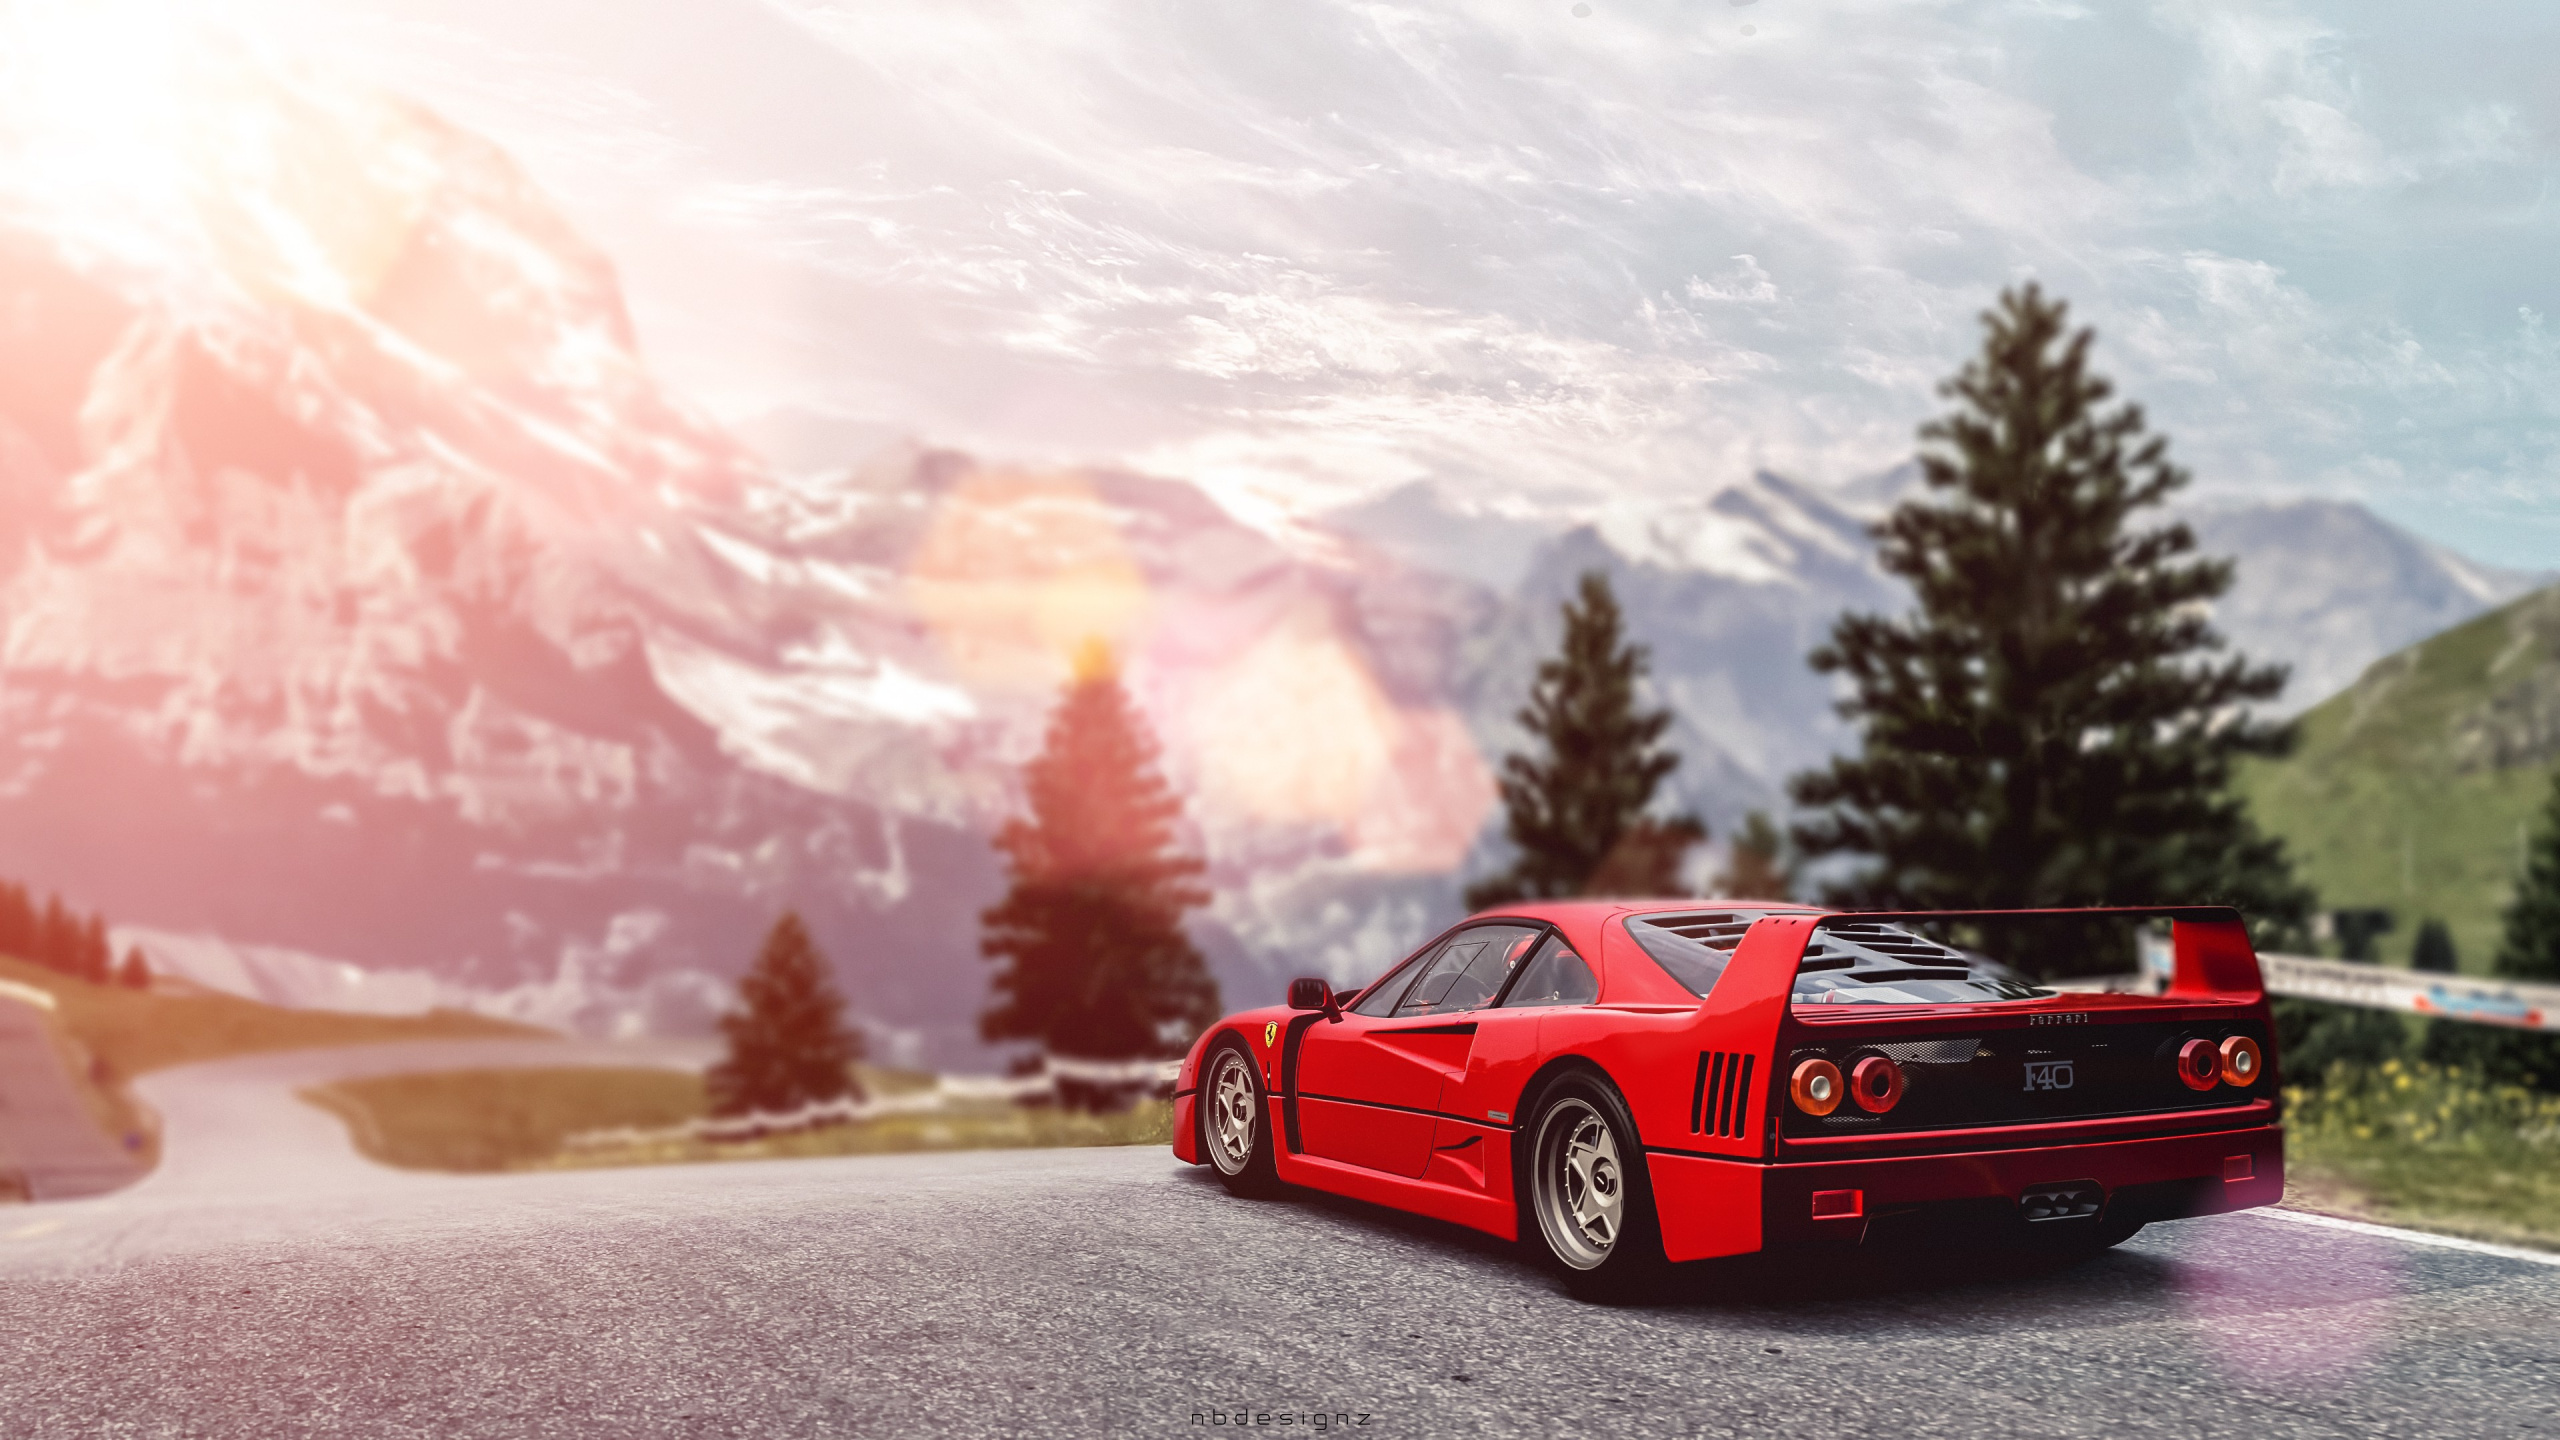 法拉利f40, Ferrari, 红色的, 赛车运动, 汽车外 壁纸 2560x1440 允许